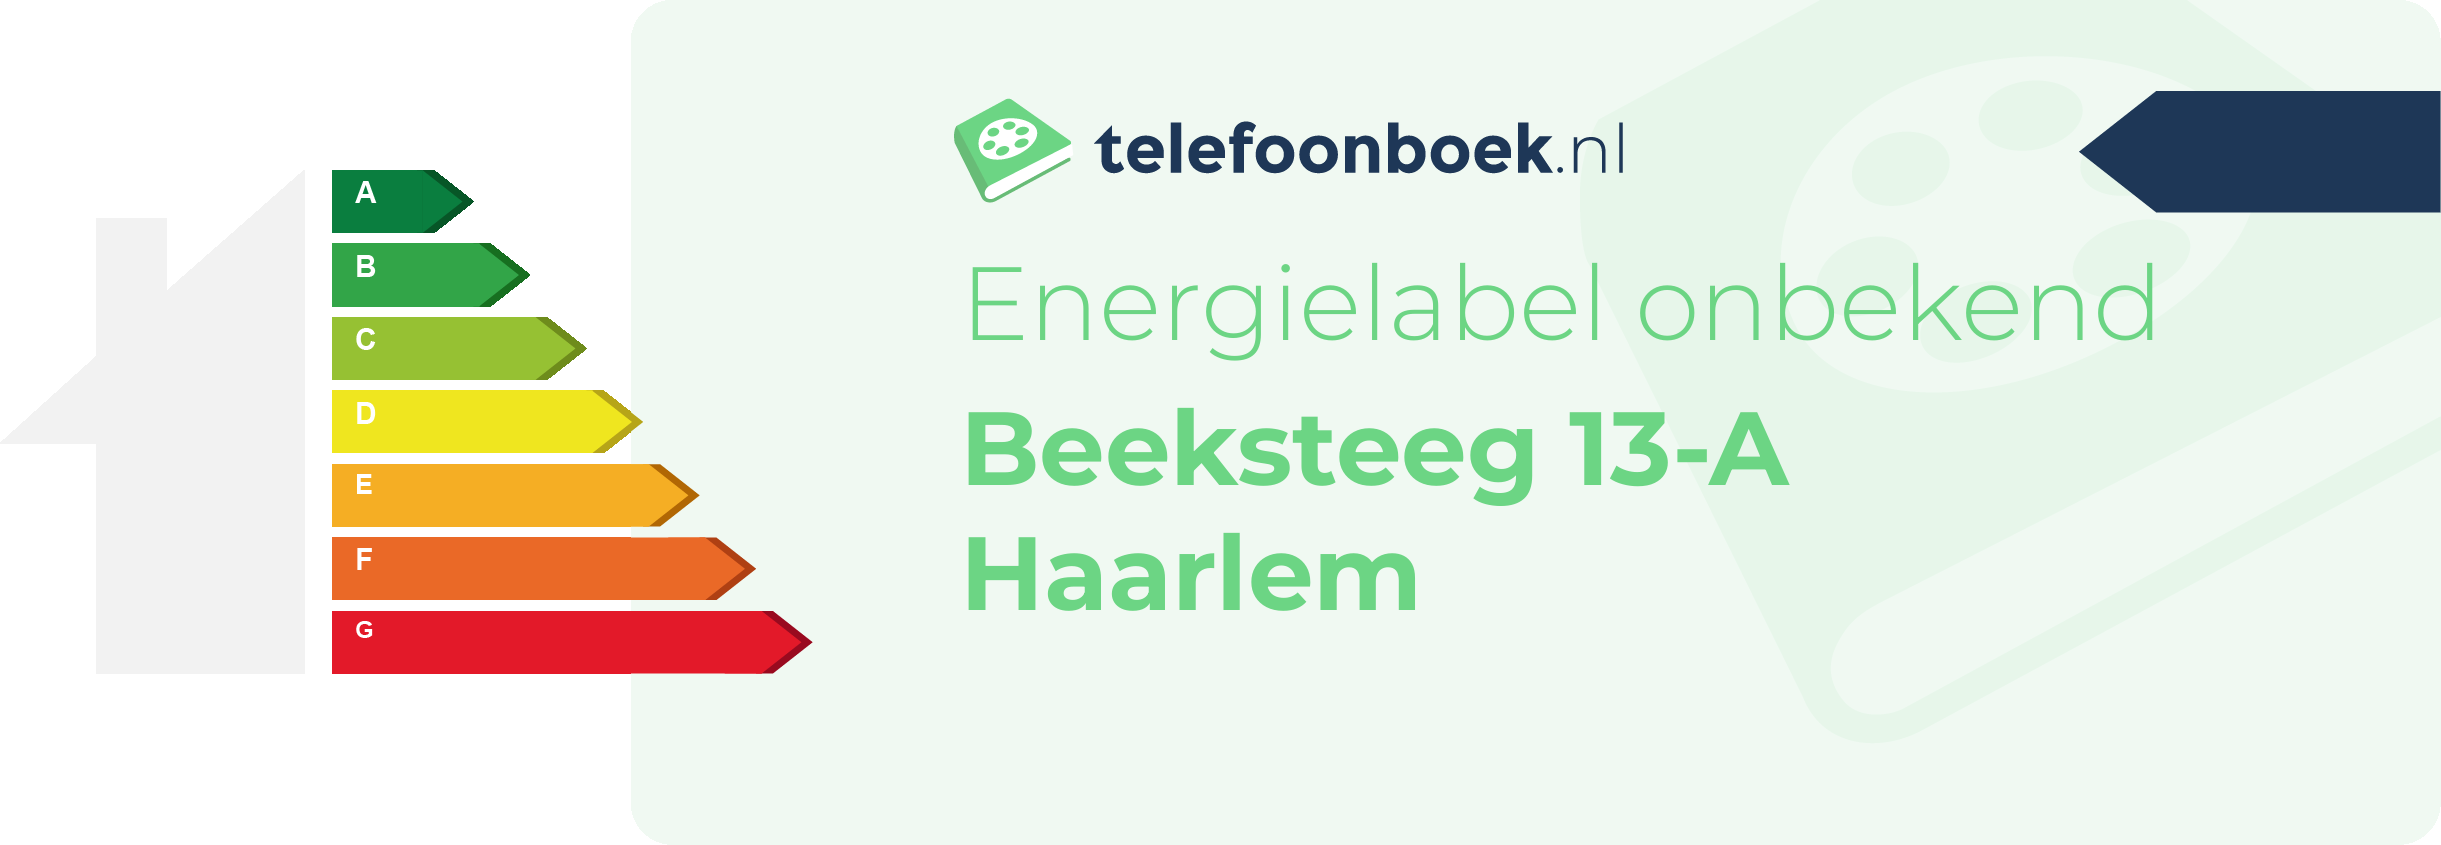 Energielabel Beeksteeg 13-A Haarlem